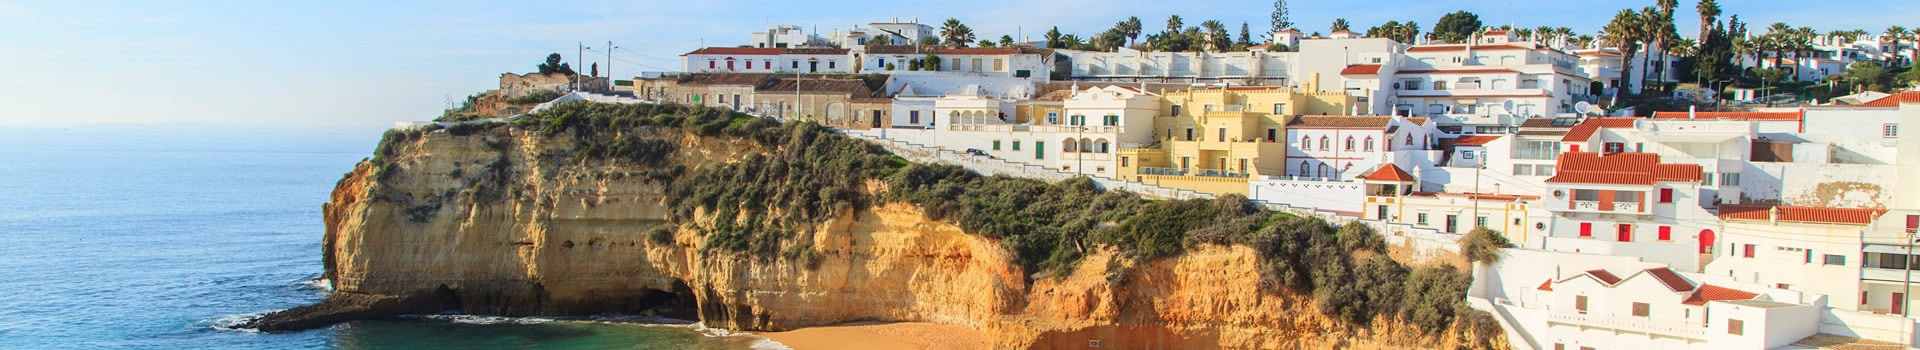 Billetes de Barco y Ferry en Algarve